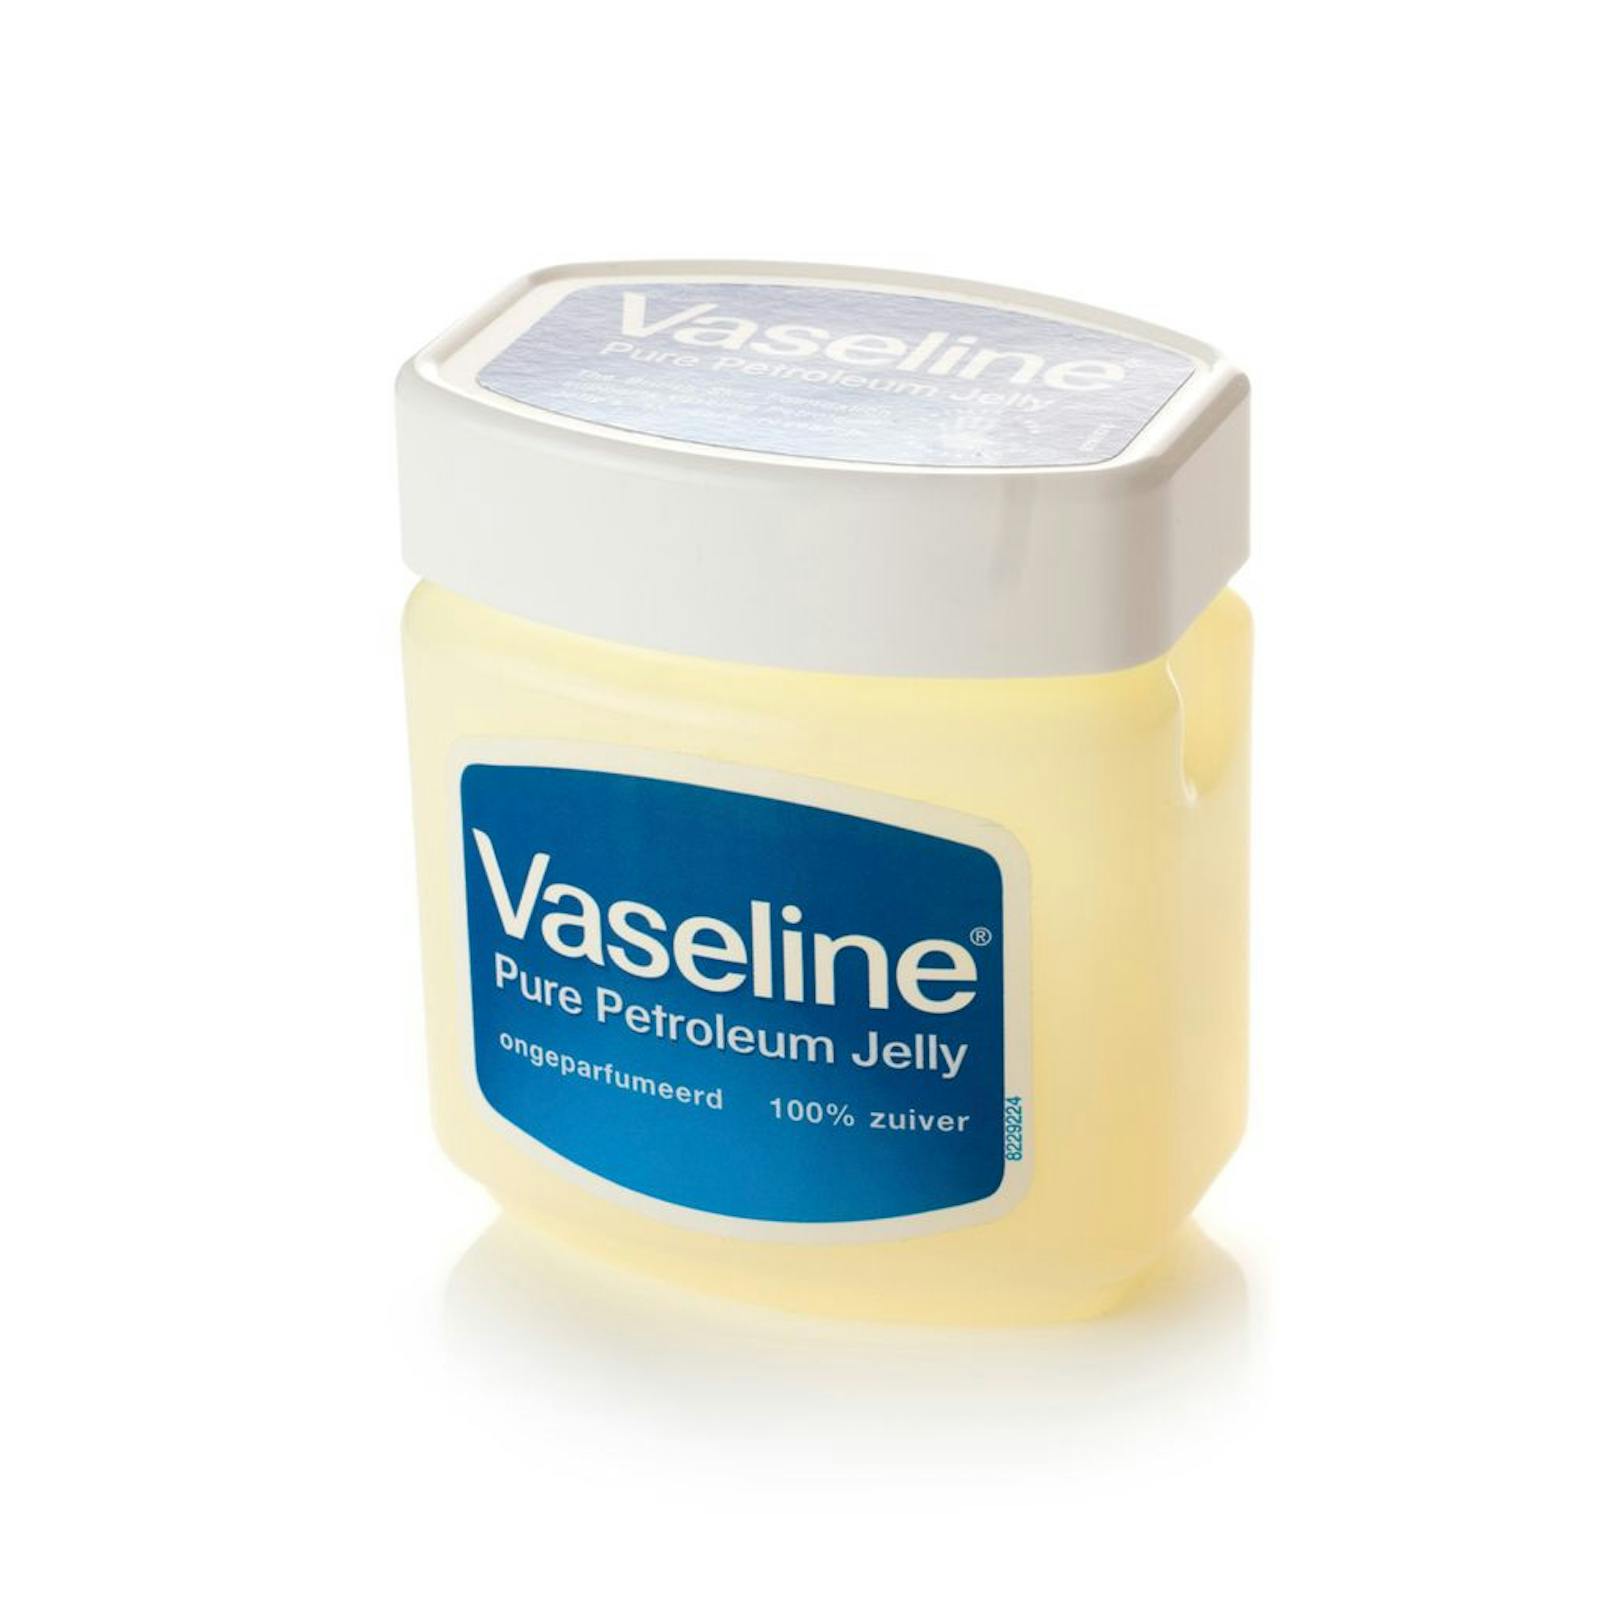 Ein ebenso bewährtes Hausmittel gegen wunde Oberschenkel ist Vaseline: Das klassische Schmiermittel wird einfach auf die Haut aufgetragen und kann für kurze Zeit die Reibung verringern.